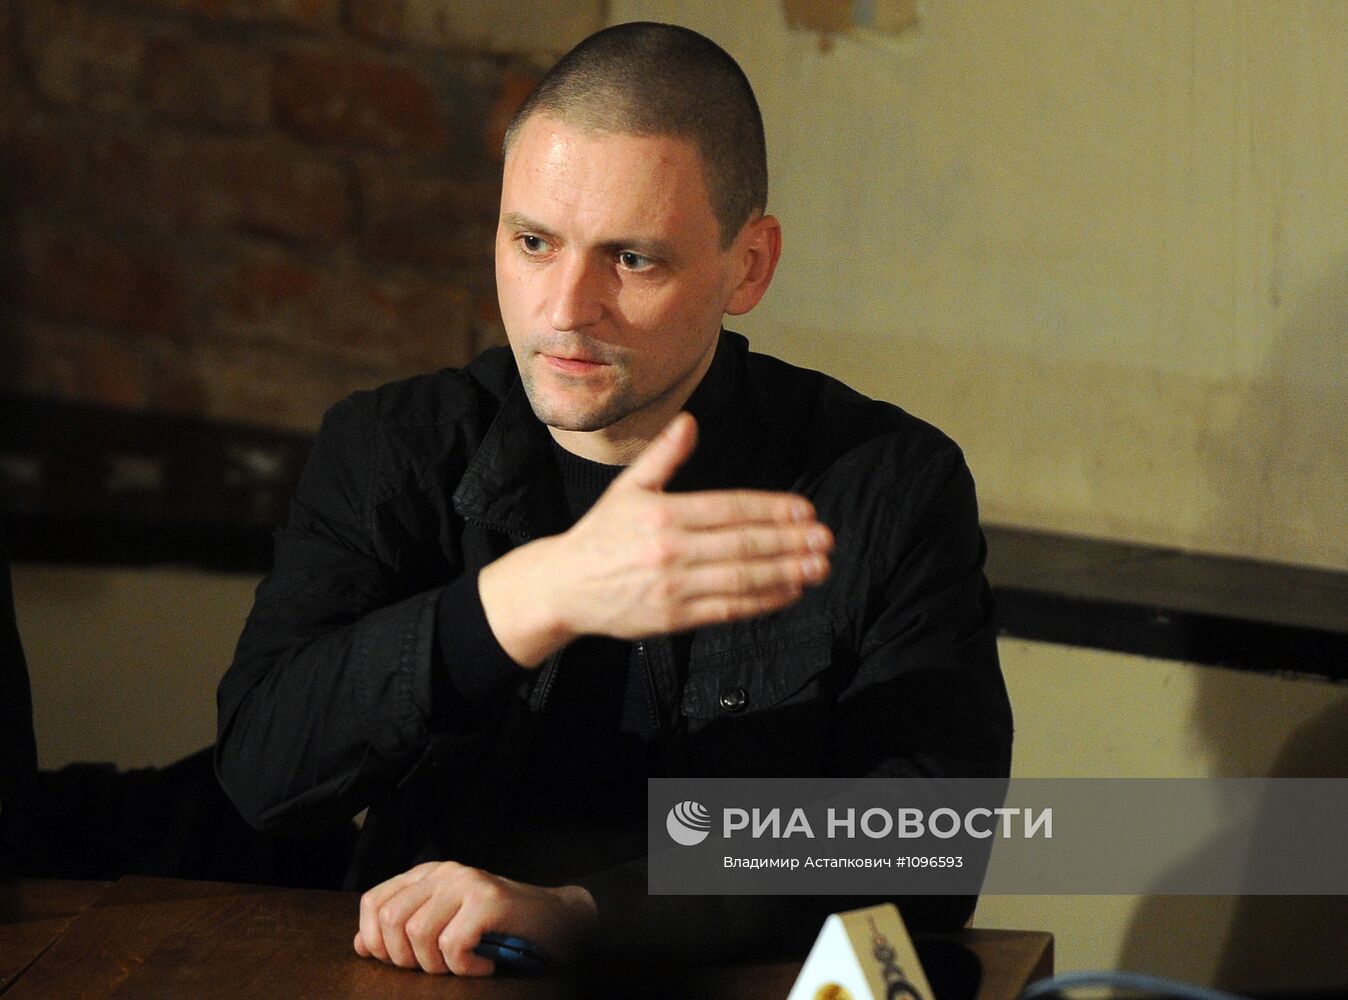 Пресс-конференция Олега Шеина в кафе "Пироги"